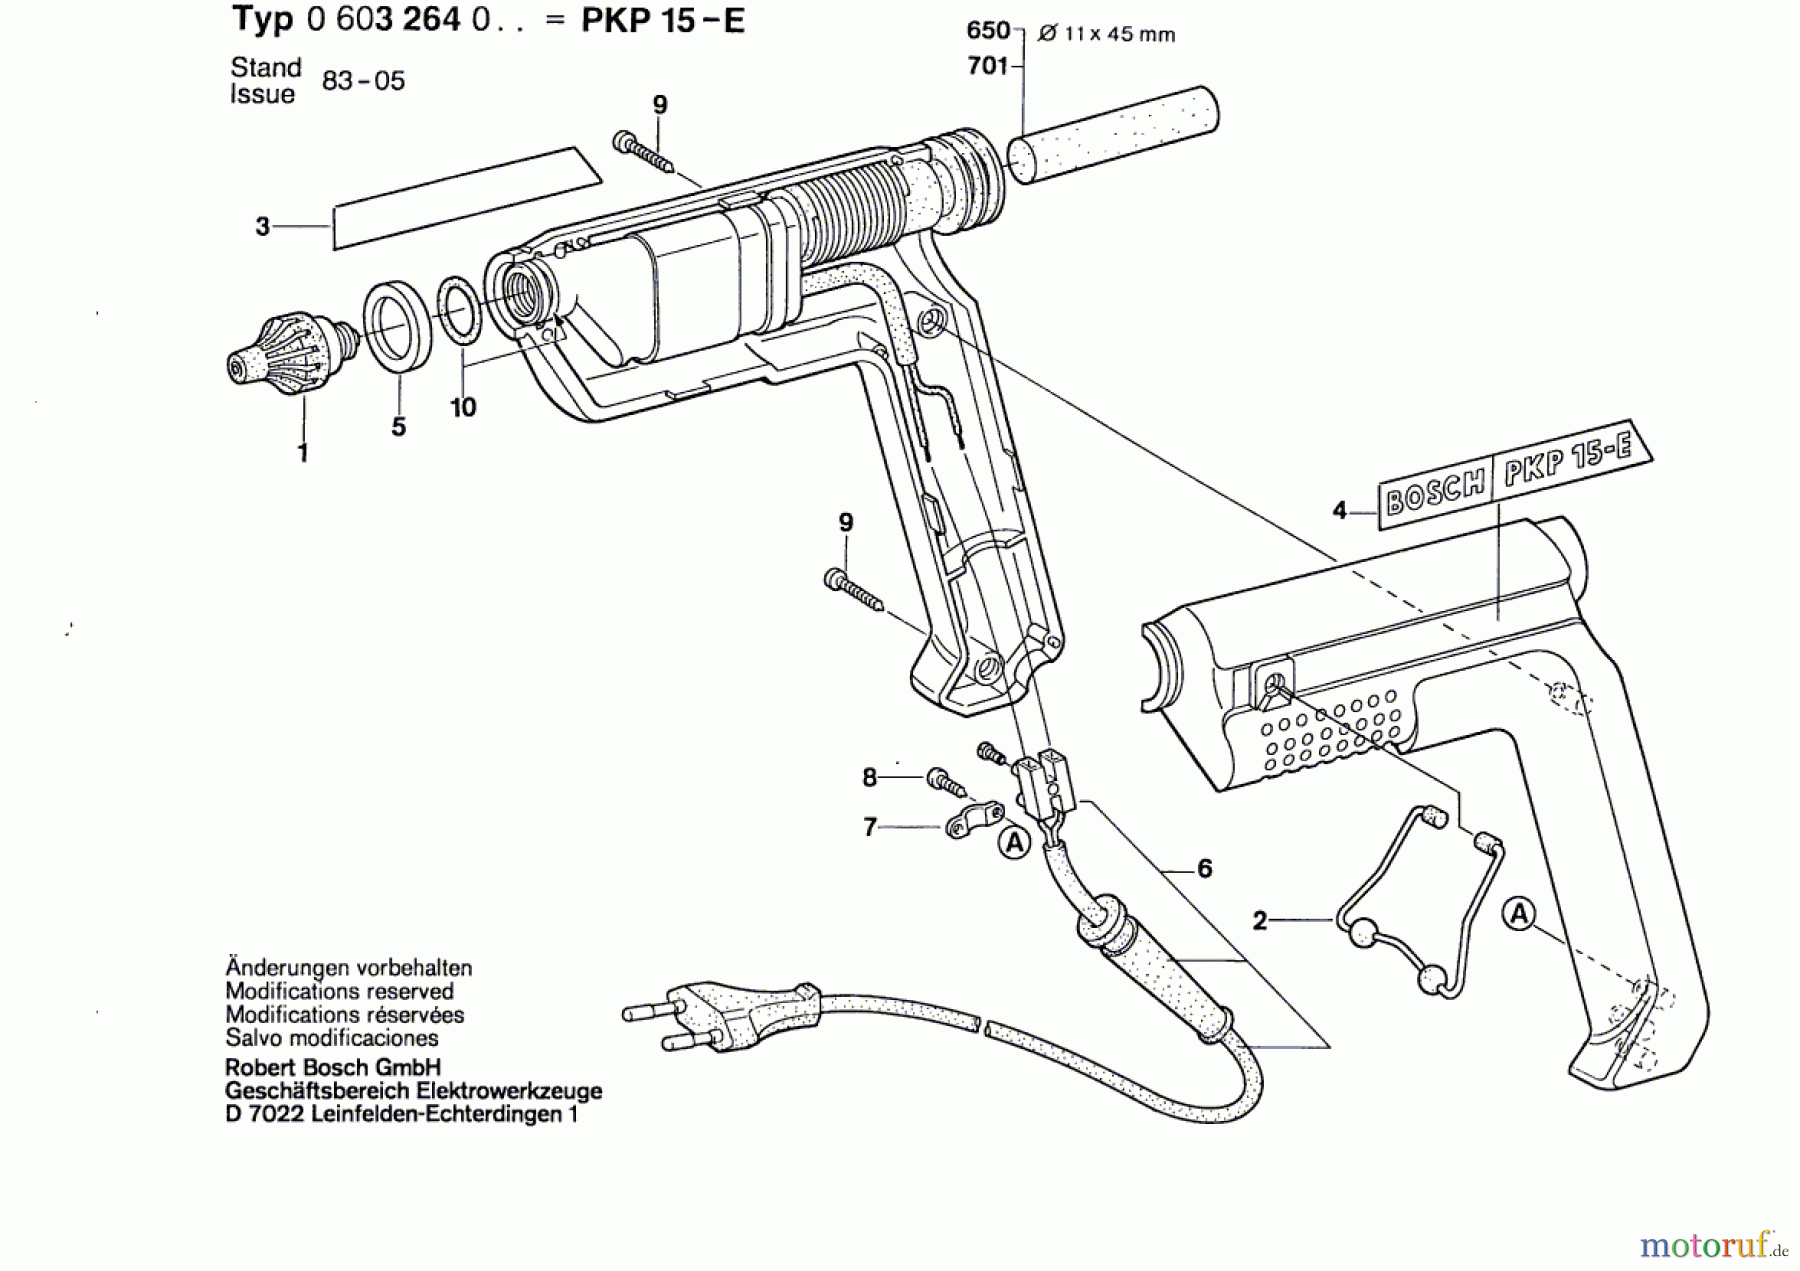  Bosch Werkzeug Klebepistole PKP 15 E Seite 1